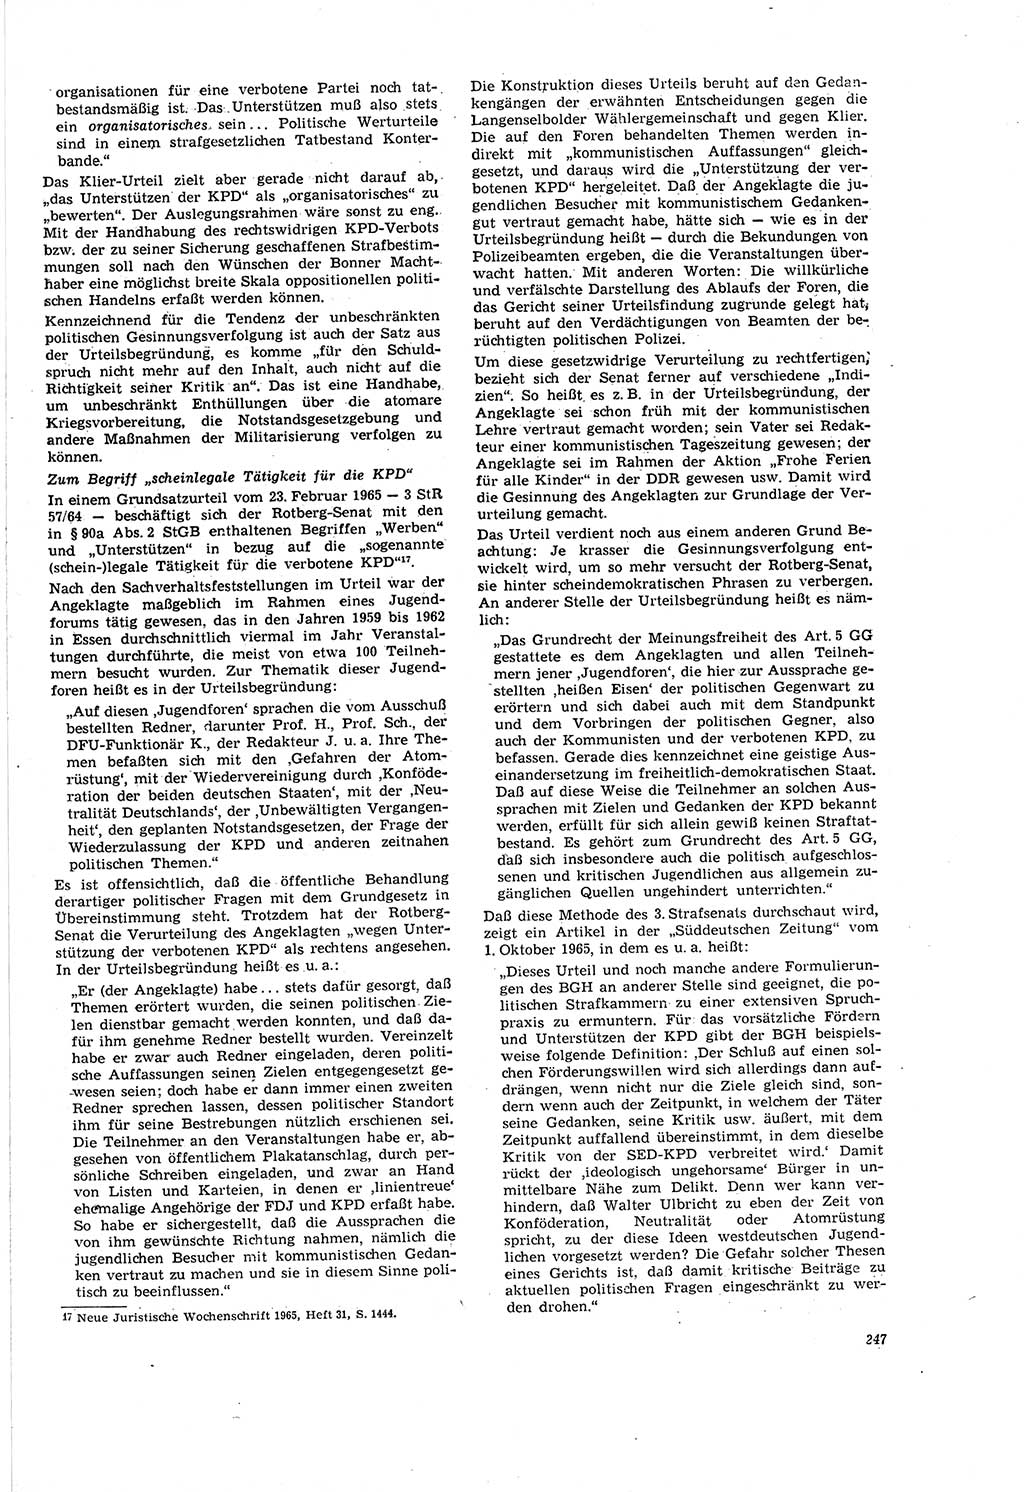 Neue Justiz (NJ), Zeitschrift für Recht und Rechtswissenschaft [Deutsche Demokratische Republik (DDR)], 20. Jahrgang 1966, Seite 247 (NJ DDR 1966, S. 247)